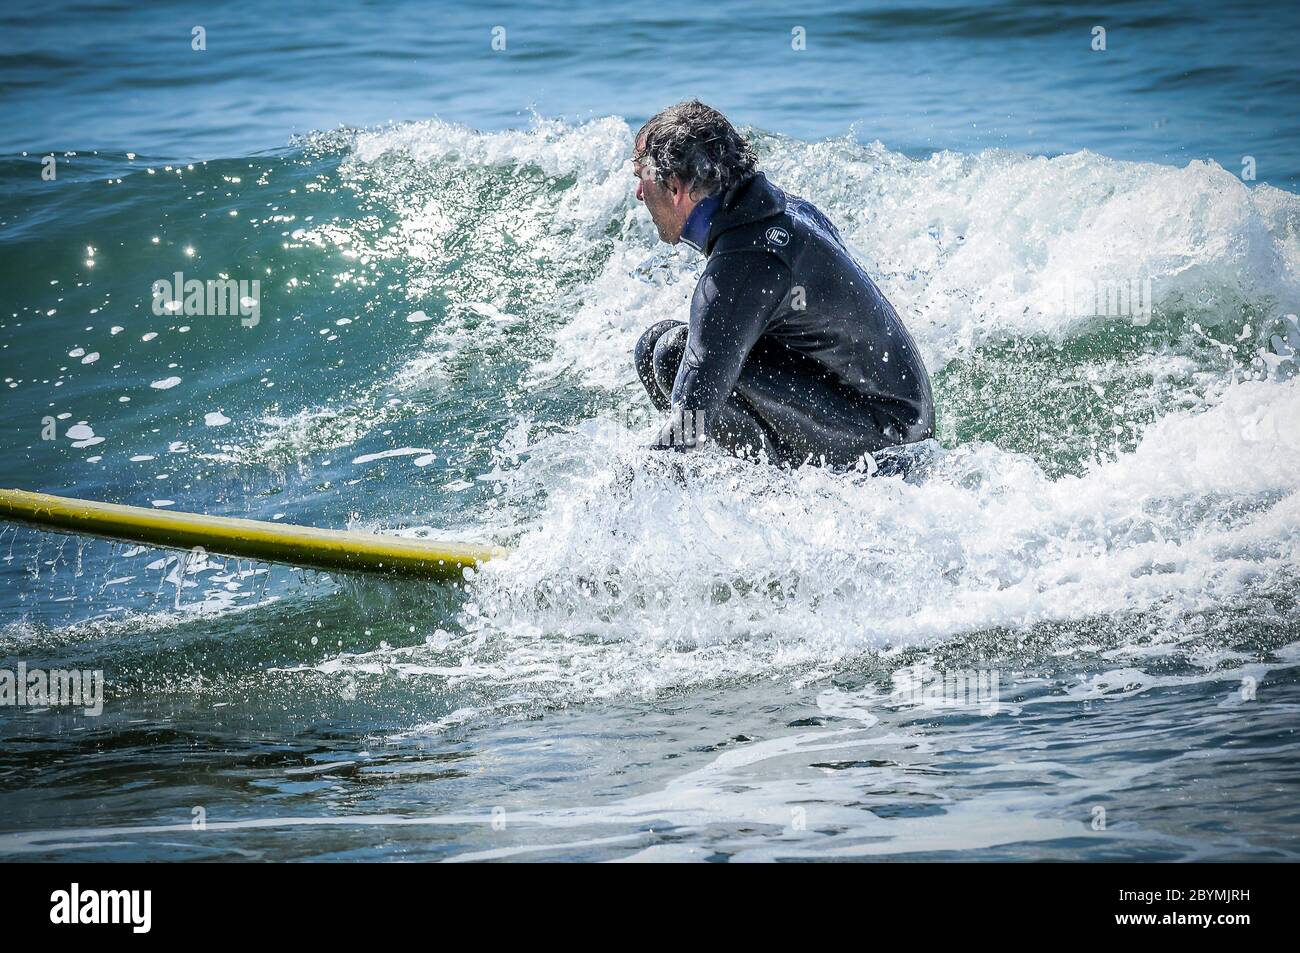 Surfer fängt an, eine Welle zu fangen, die nicht groß genug zu sein scheint, um zu fahren, aber als er beginnt, zu gehen, beginnt es, viel kleiner und langsamer zu werden. Stockfoto